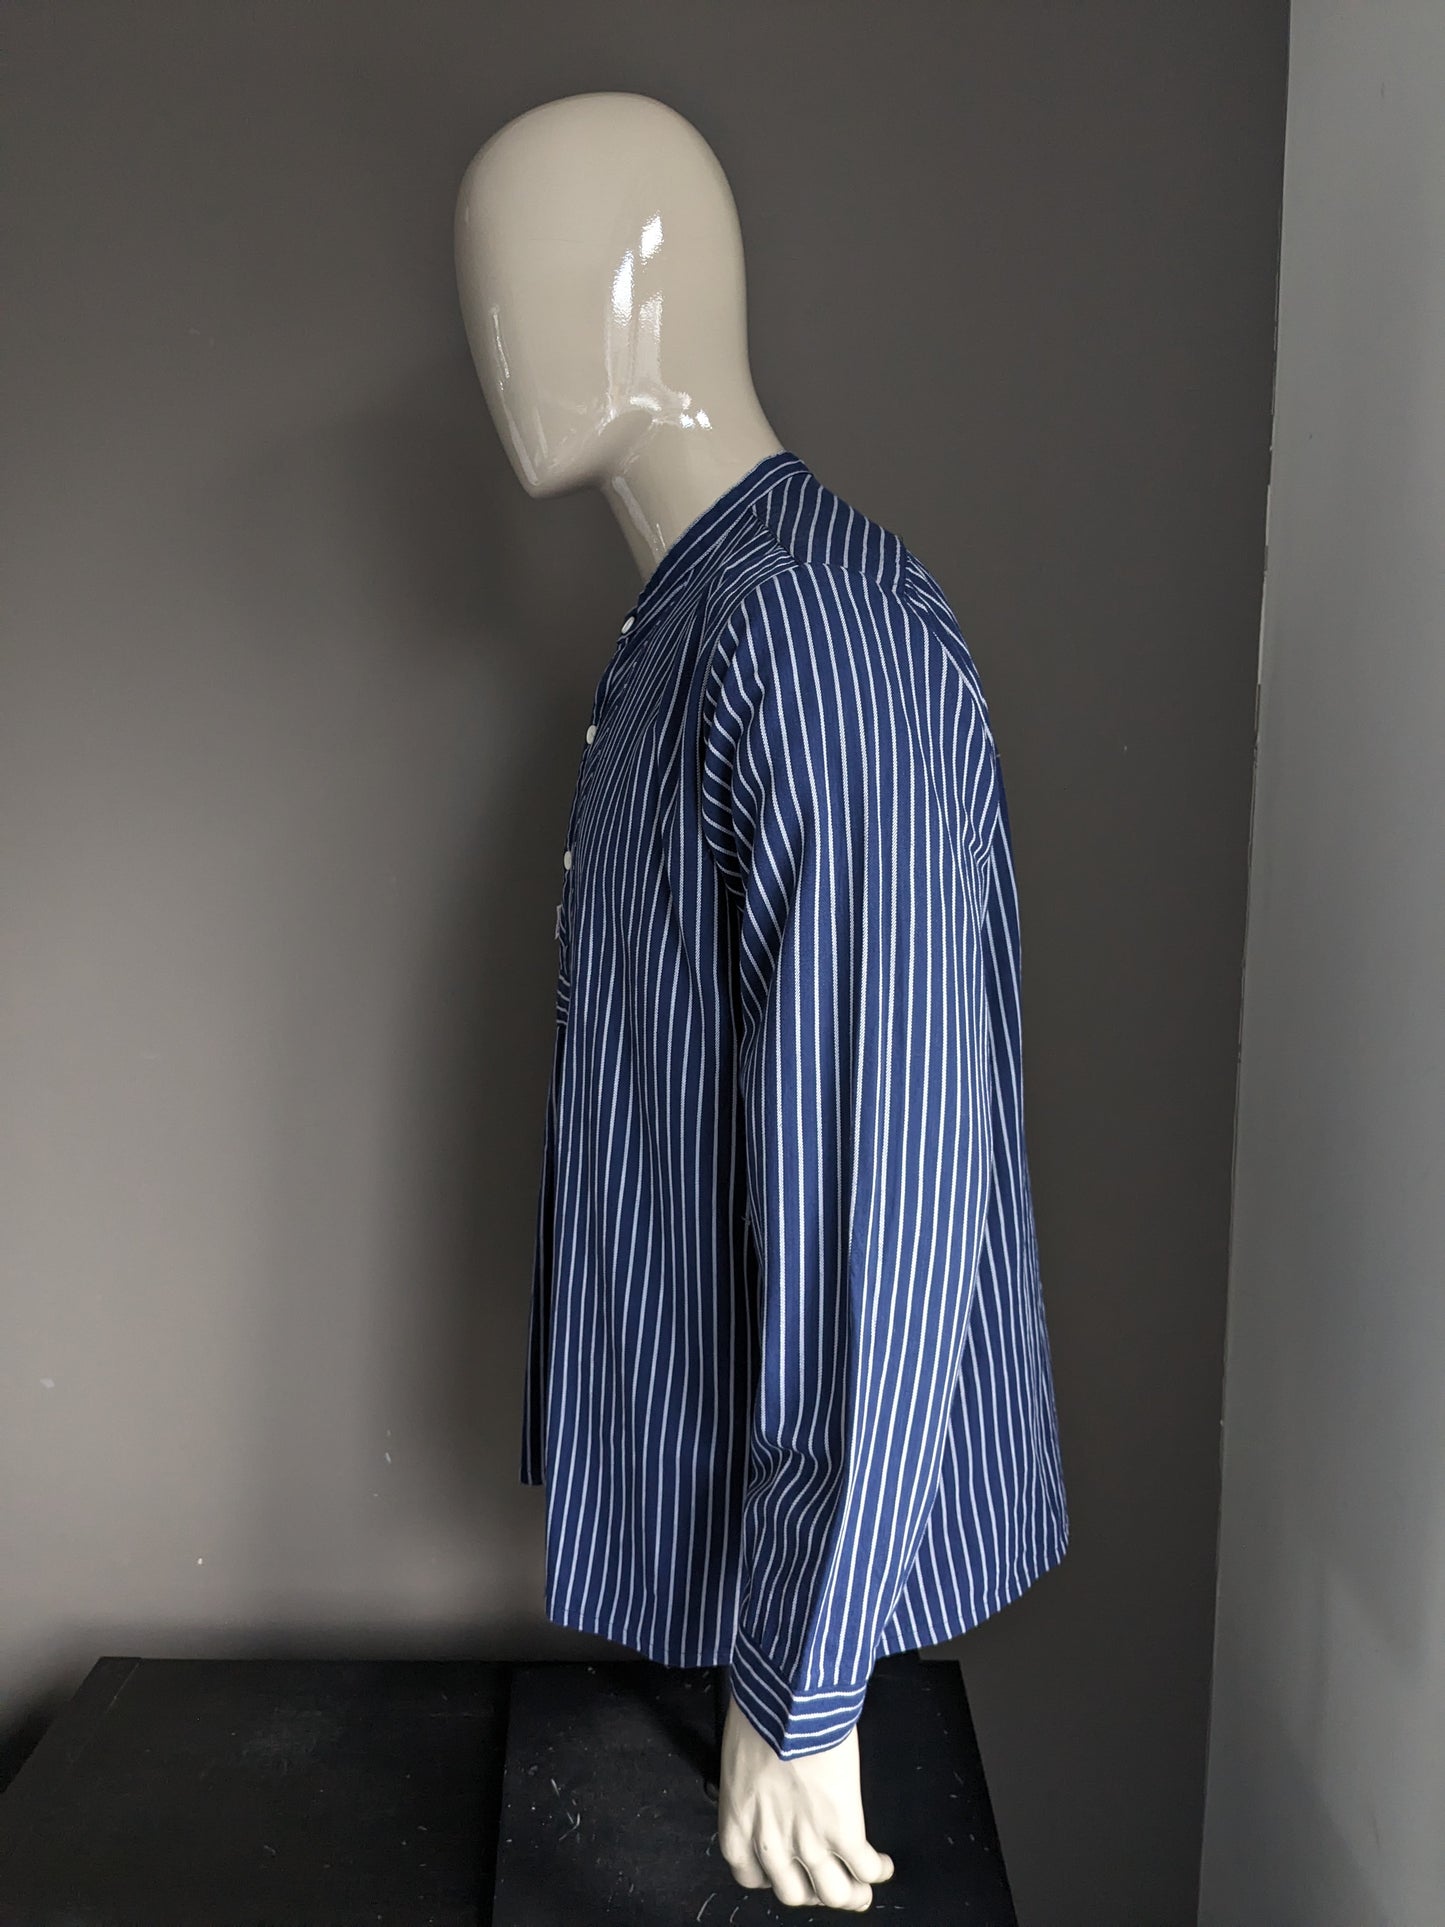 Vintage Modas Polo Pullover / Hemd. Steh- / Landwirte / Mao -Kragen. Blau weiß gestreift. Größe xl.